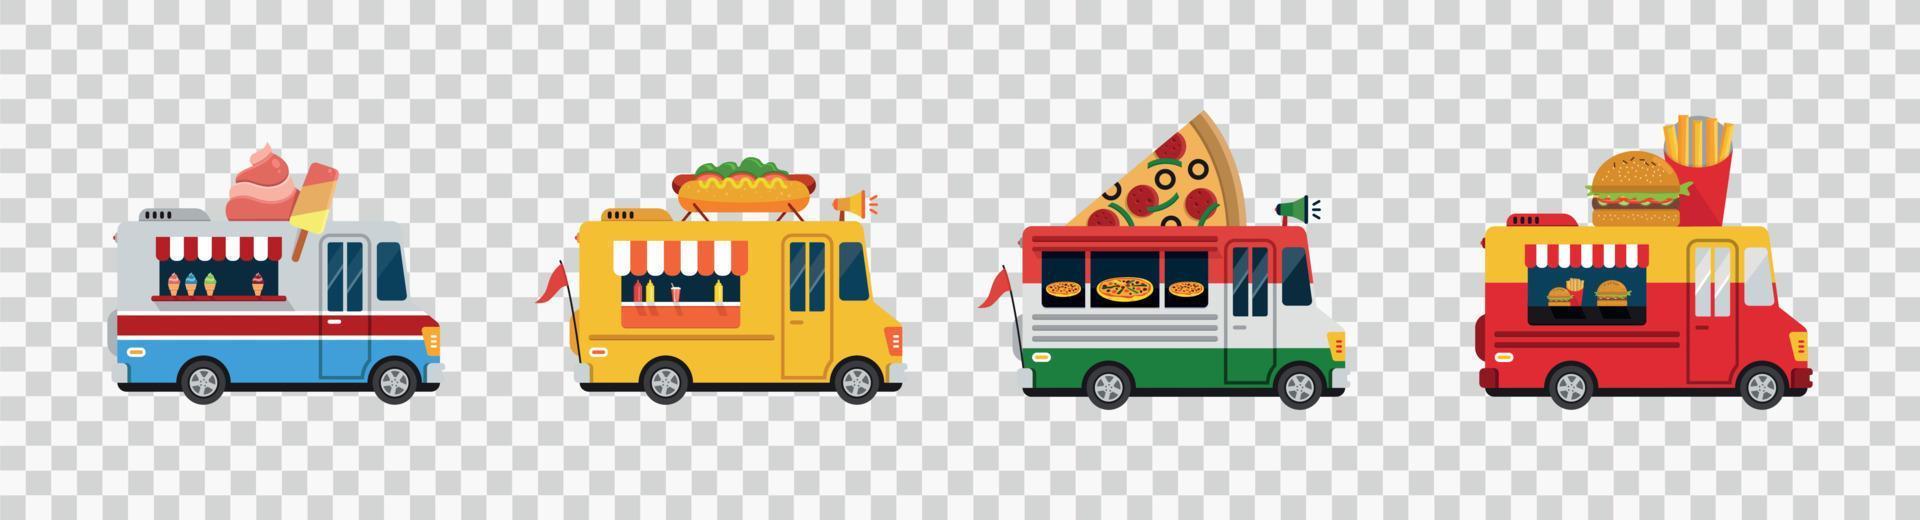 camiones de comida coches vectoriales aislados, furgonetas de dibujos animados para la venta de comida callejera ilustración vectorial vector